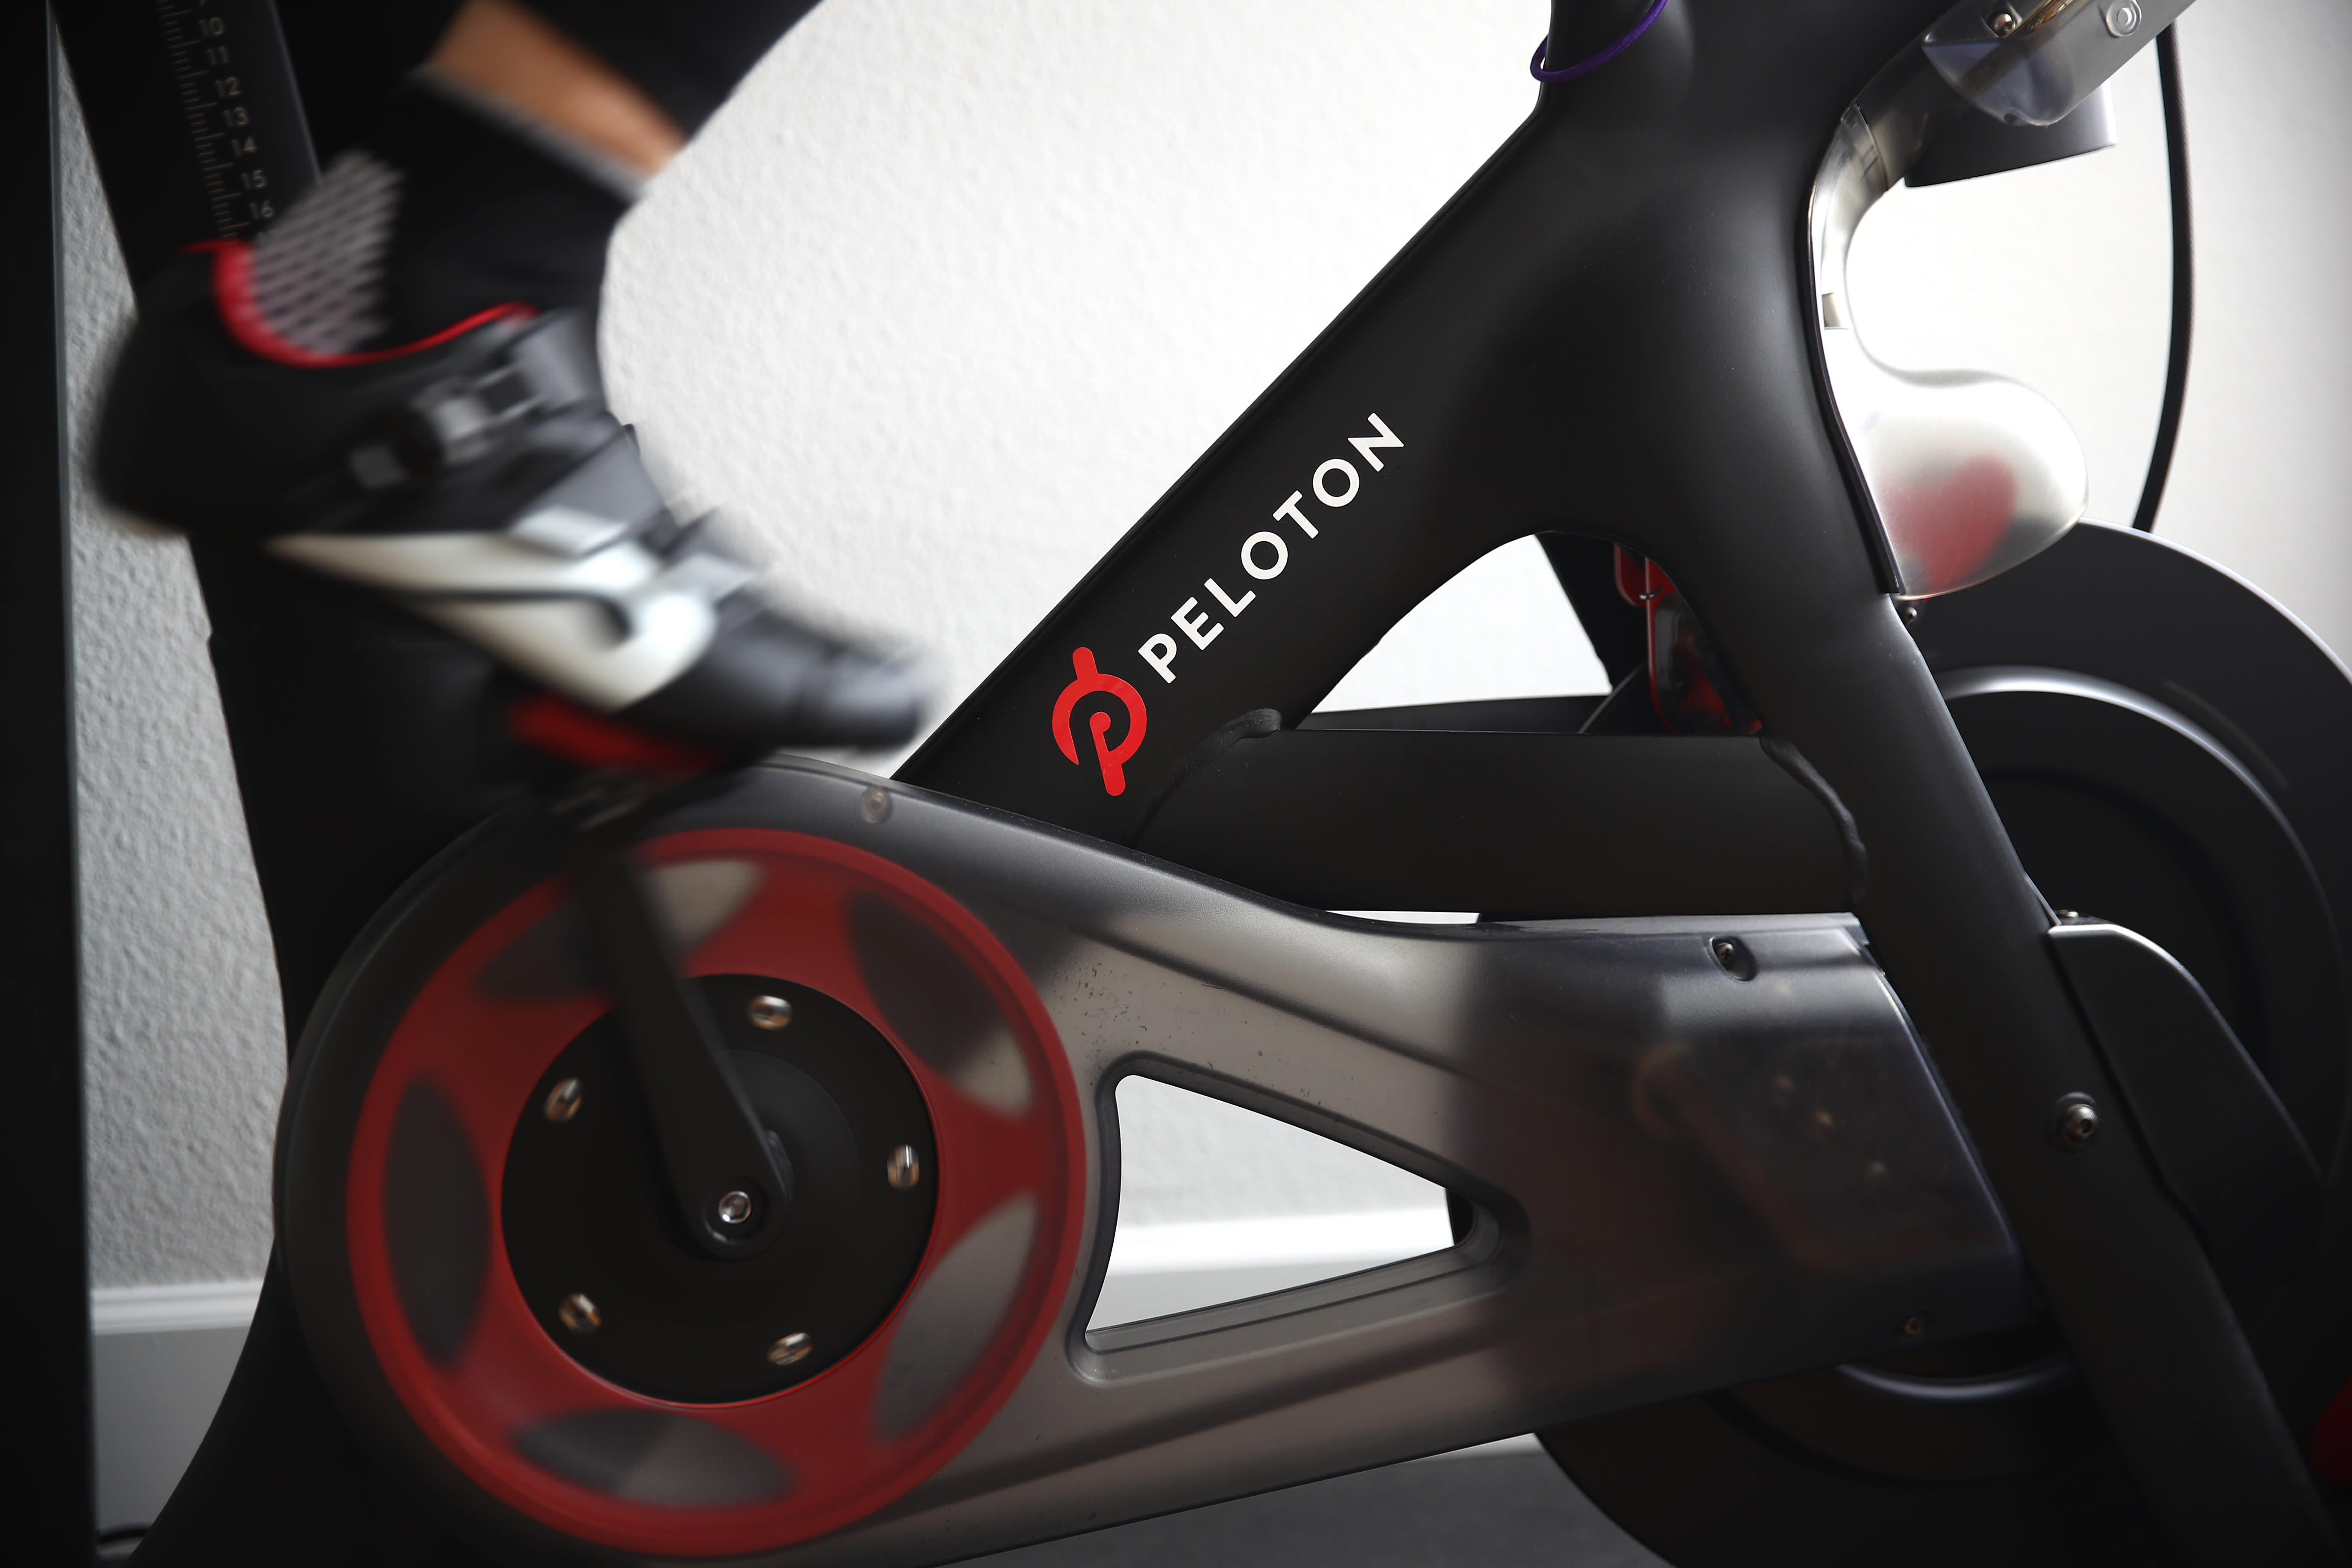 Peloton will acquire fitness equipment manufacturer Precor for $ 420 million